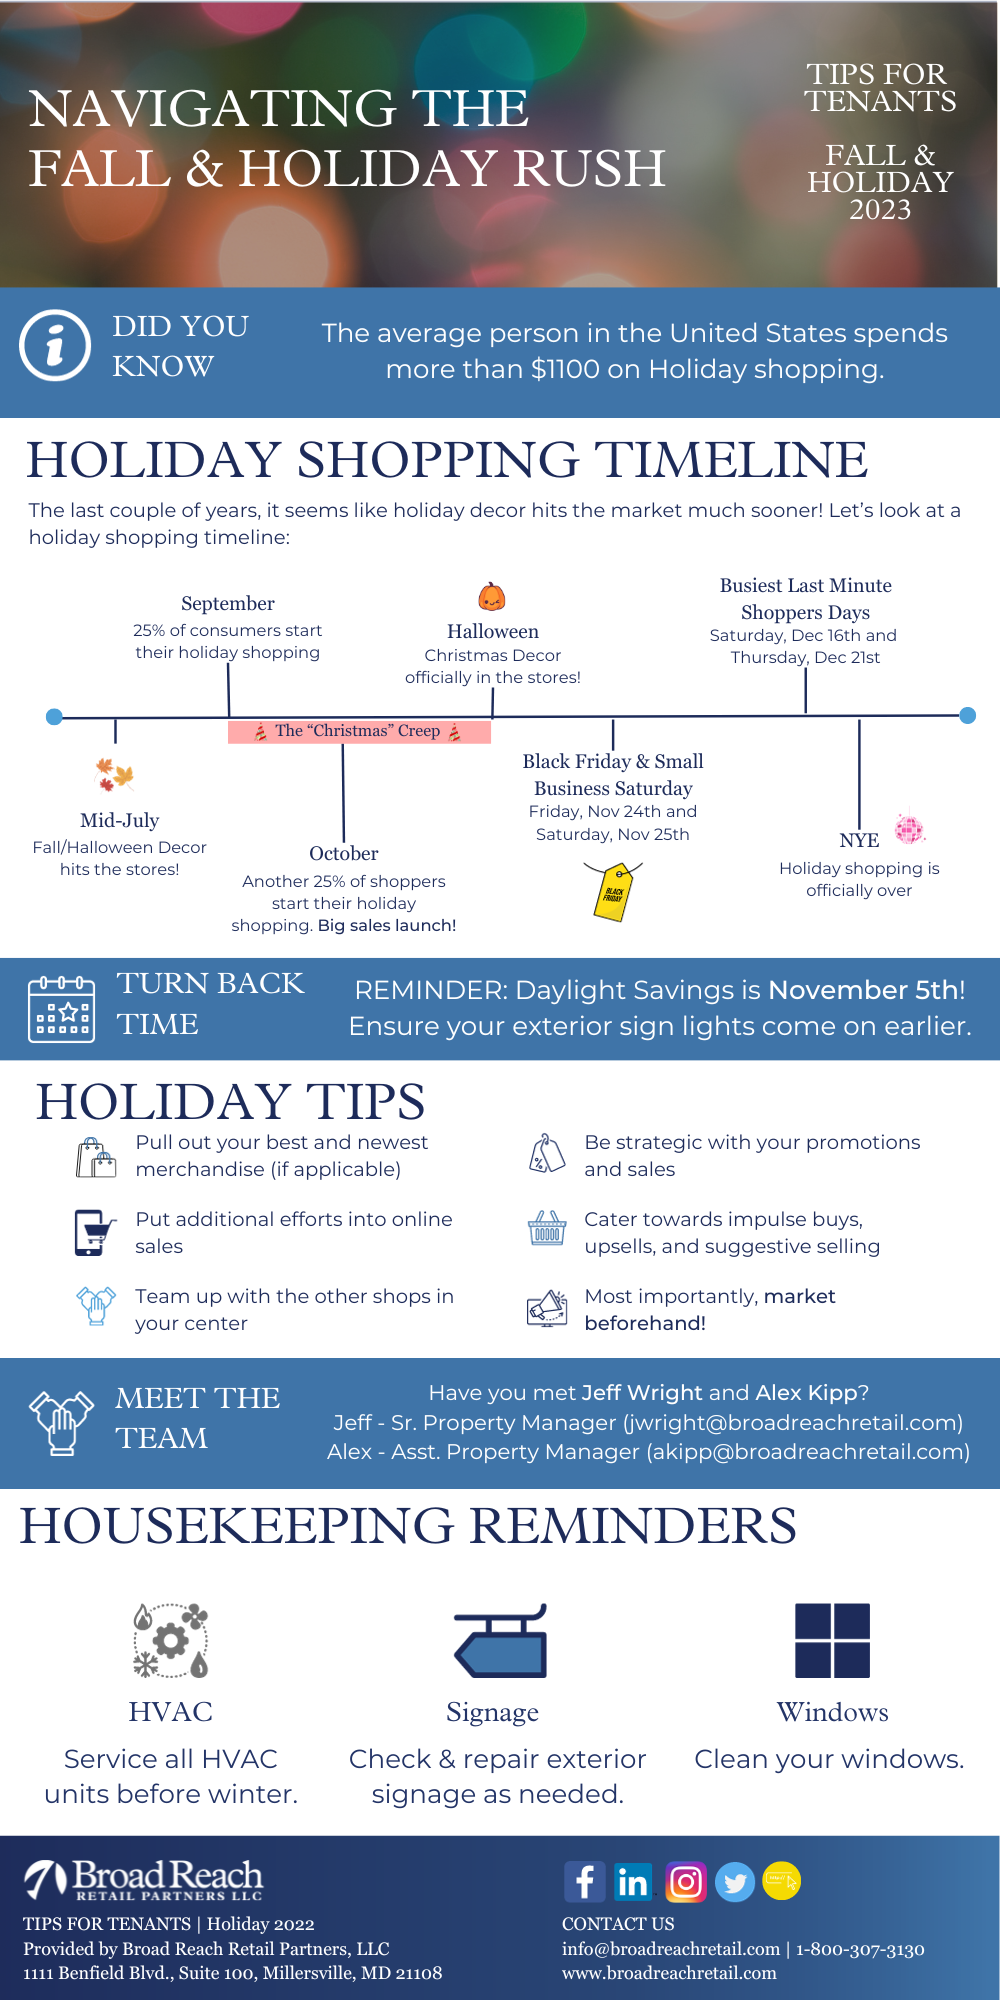 Full tips for tenants infographic